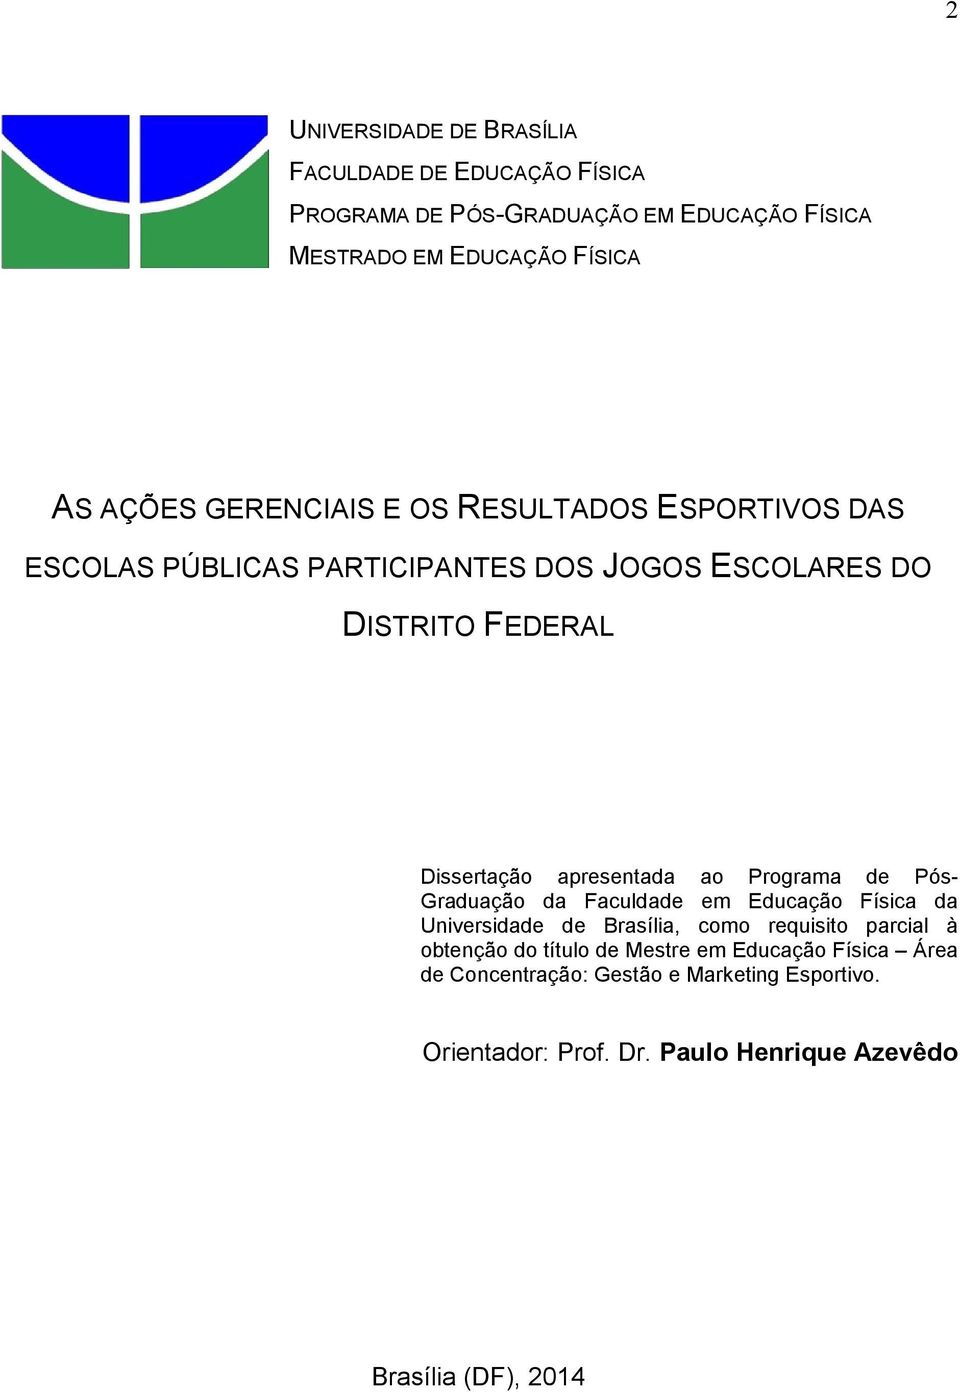 ao Programa de Pós- Graduação da Faculdade em Educação Física da Universidade de Brasília, como requisito parcial à obtenção do título de